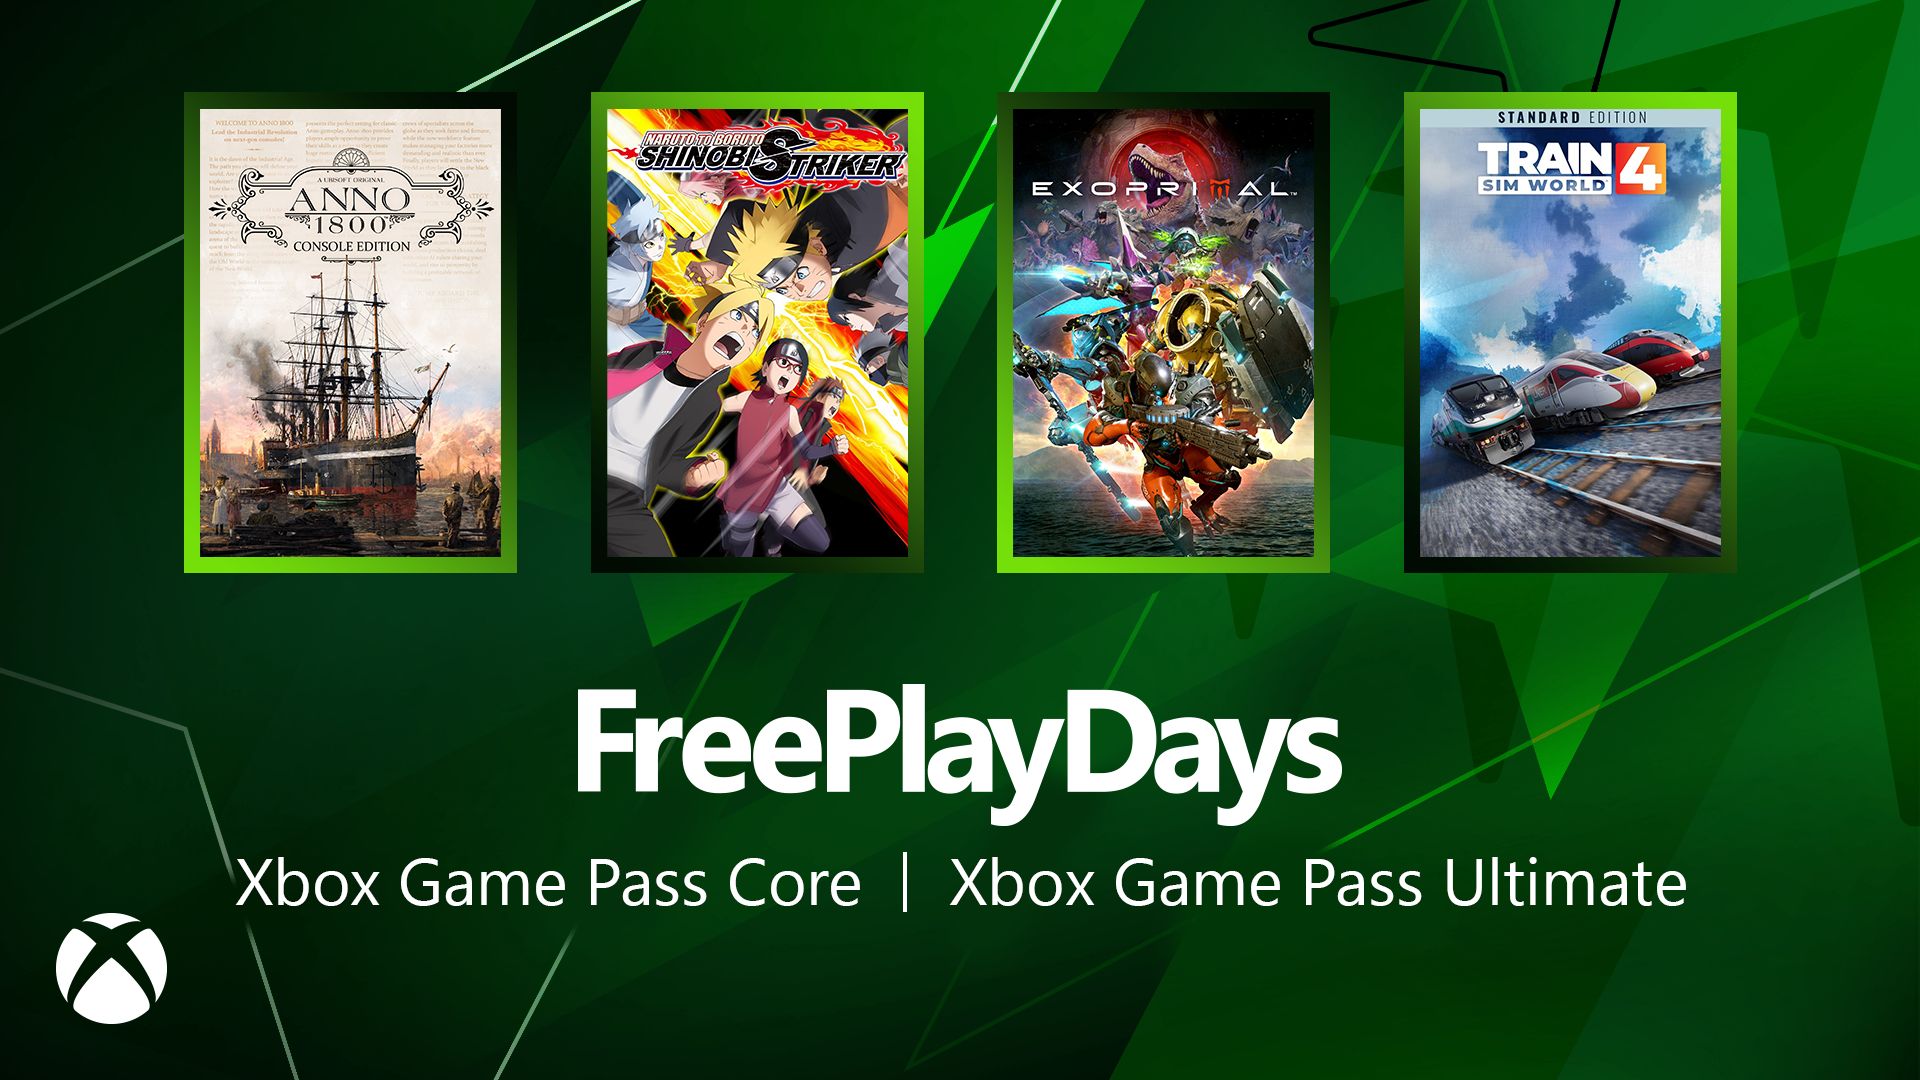 Geração Xbox - Os 10 melhores jogos disponíveis no Xbox Game Pass Core